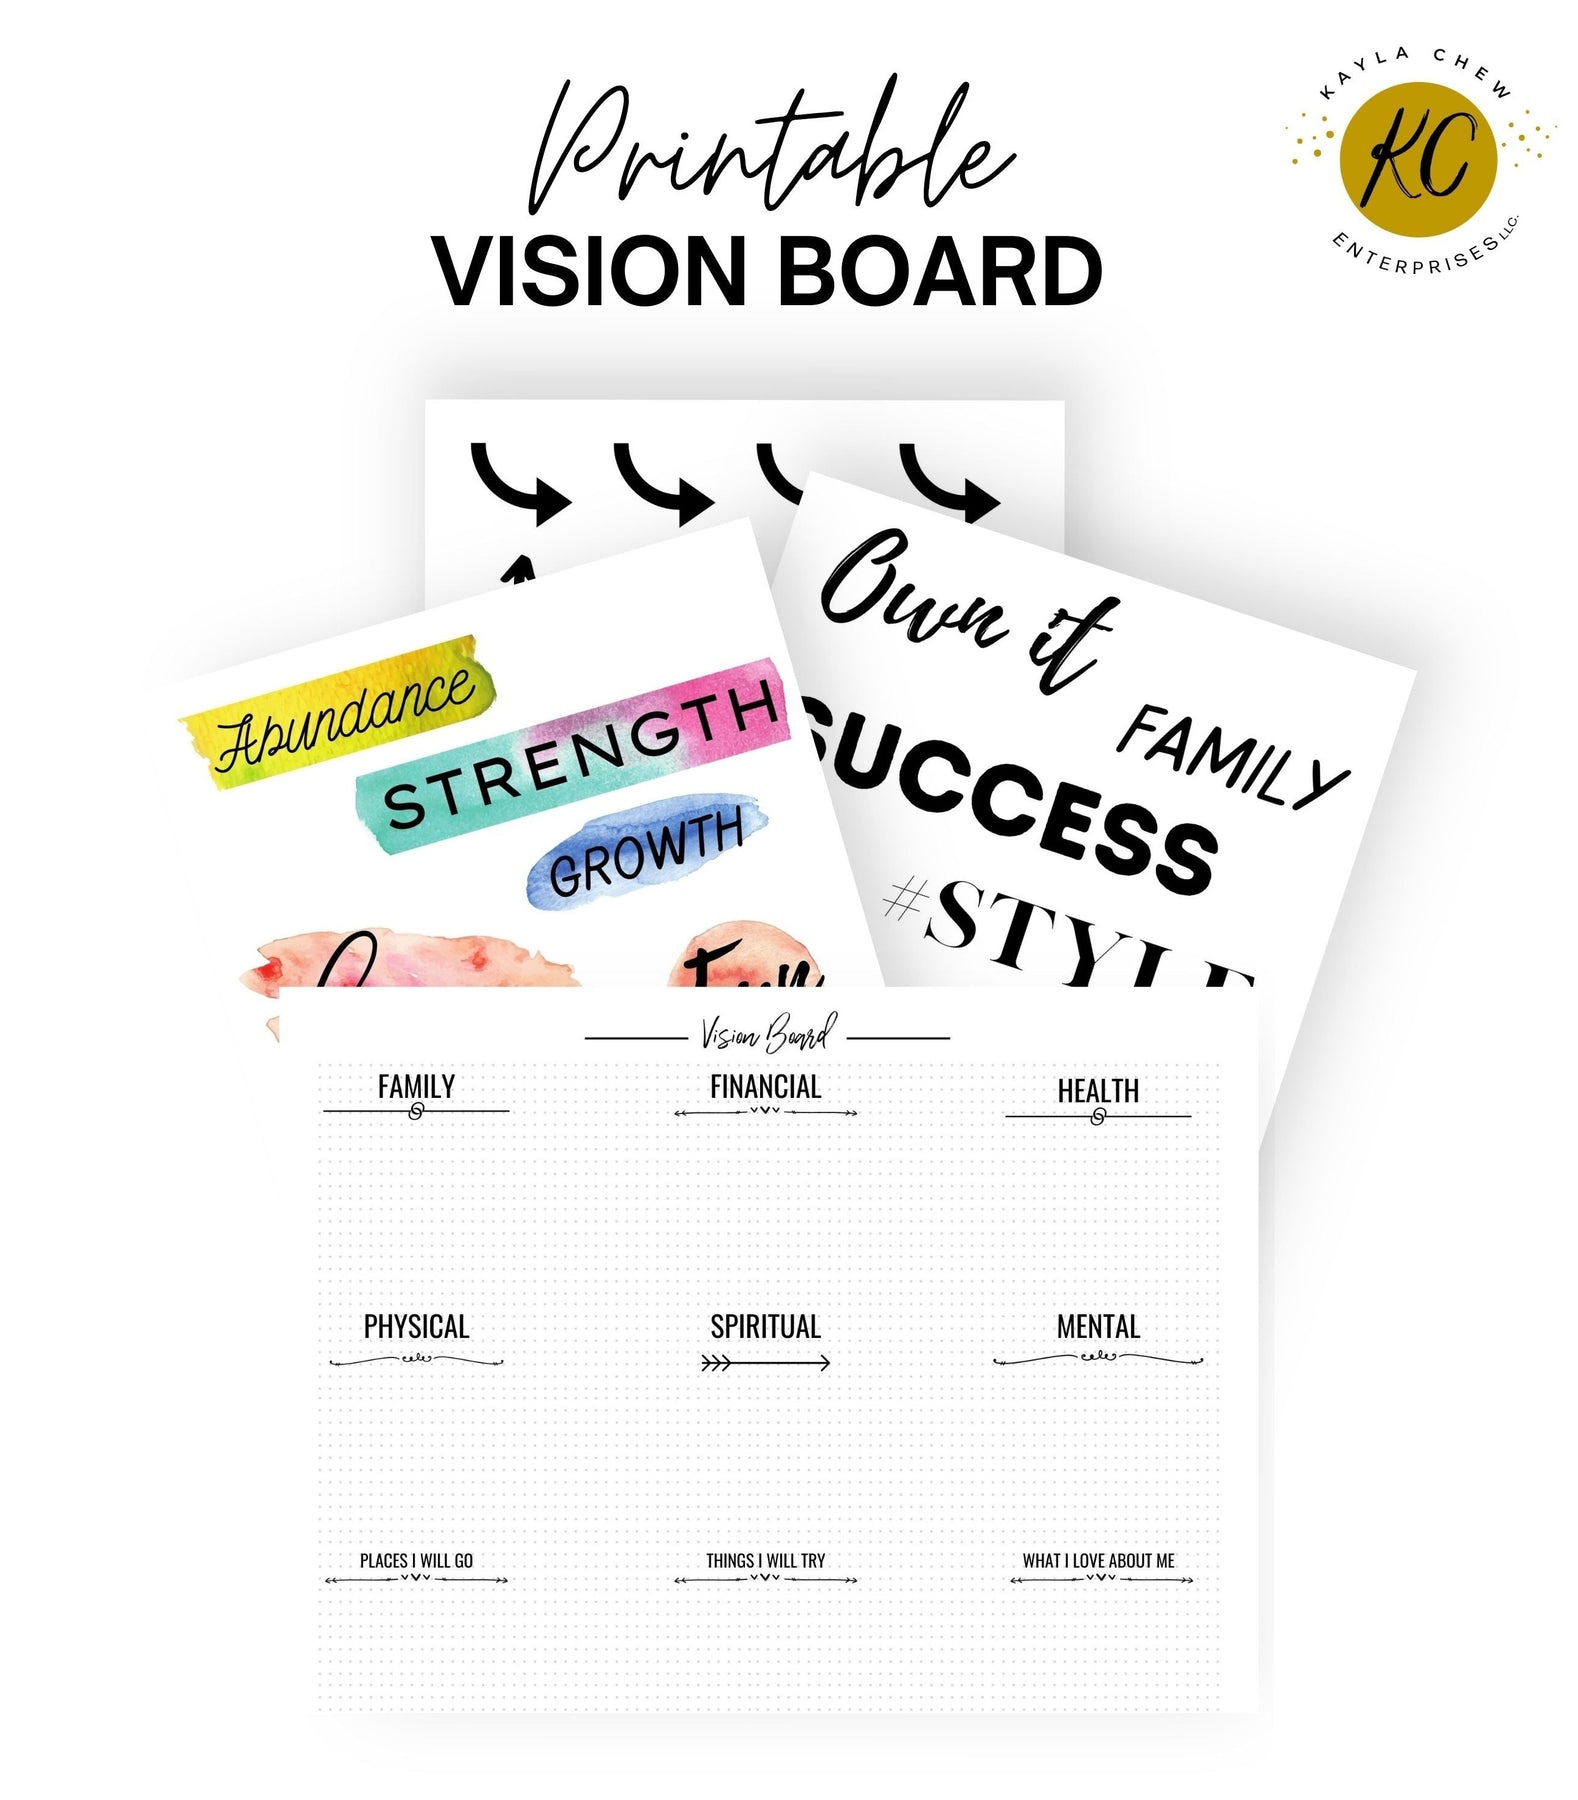 Vision Board Checklist (Free Printable Download)